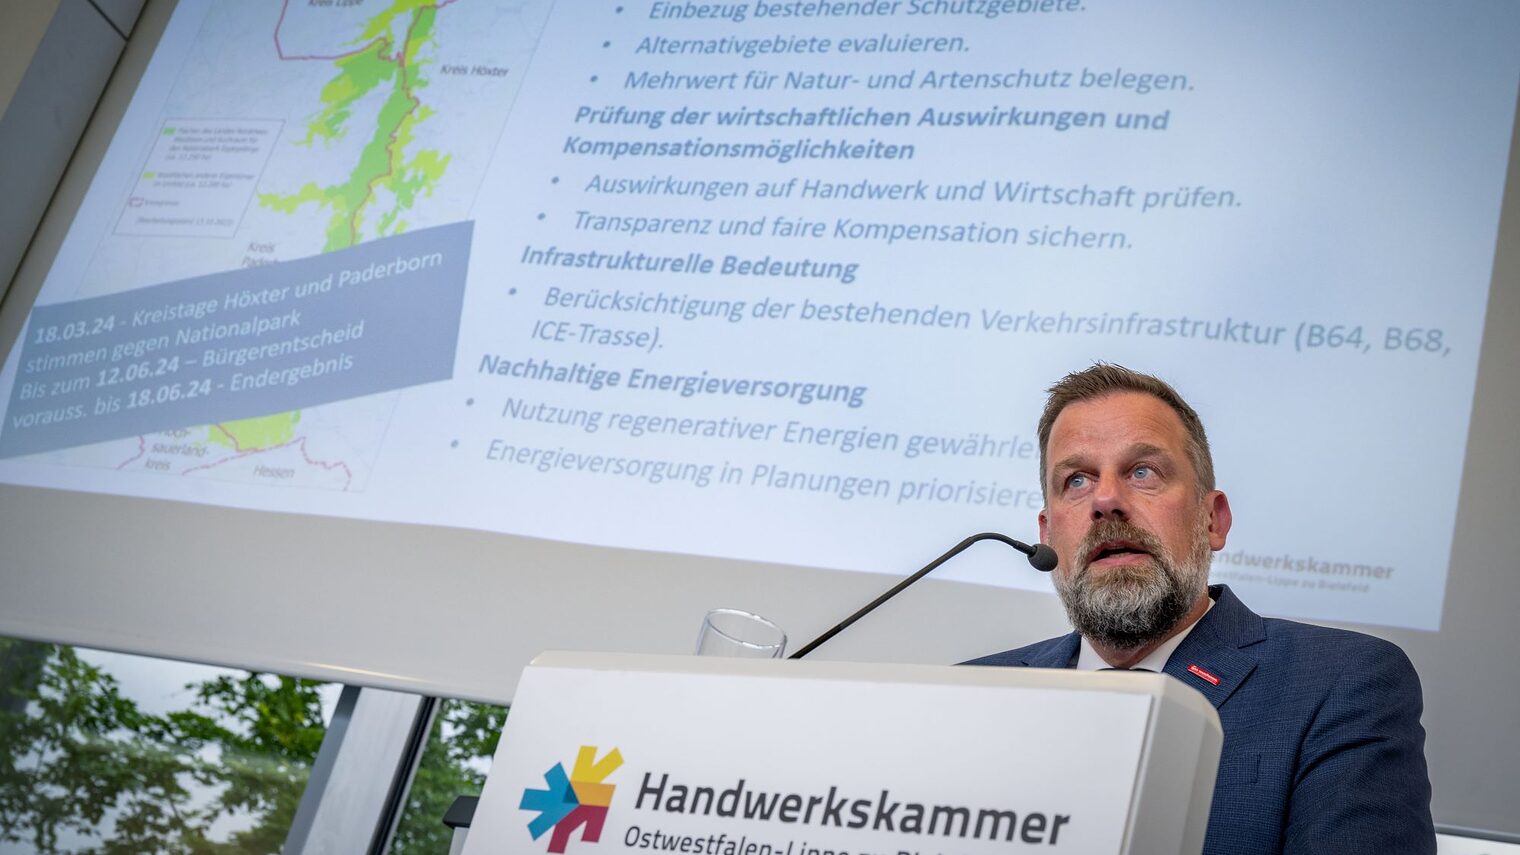 Dr. Jens Prager, Hauptgeschäftsführer der Handwerkskammer OWL, stellt die Resolution zum Nationalpark Eggegebirge vor. 